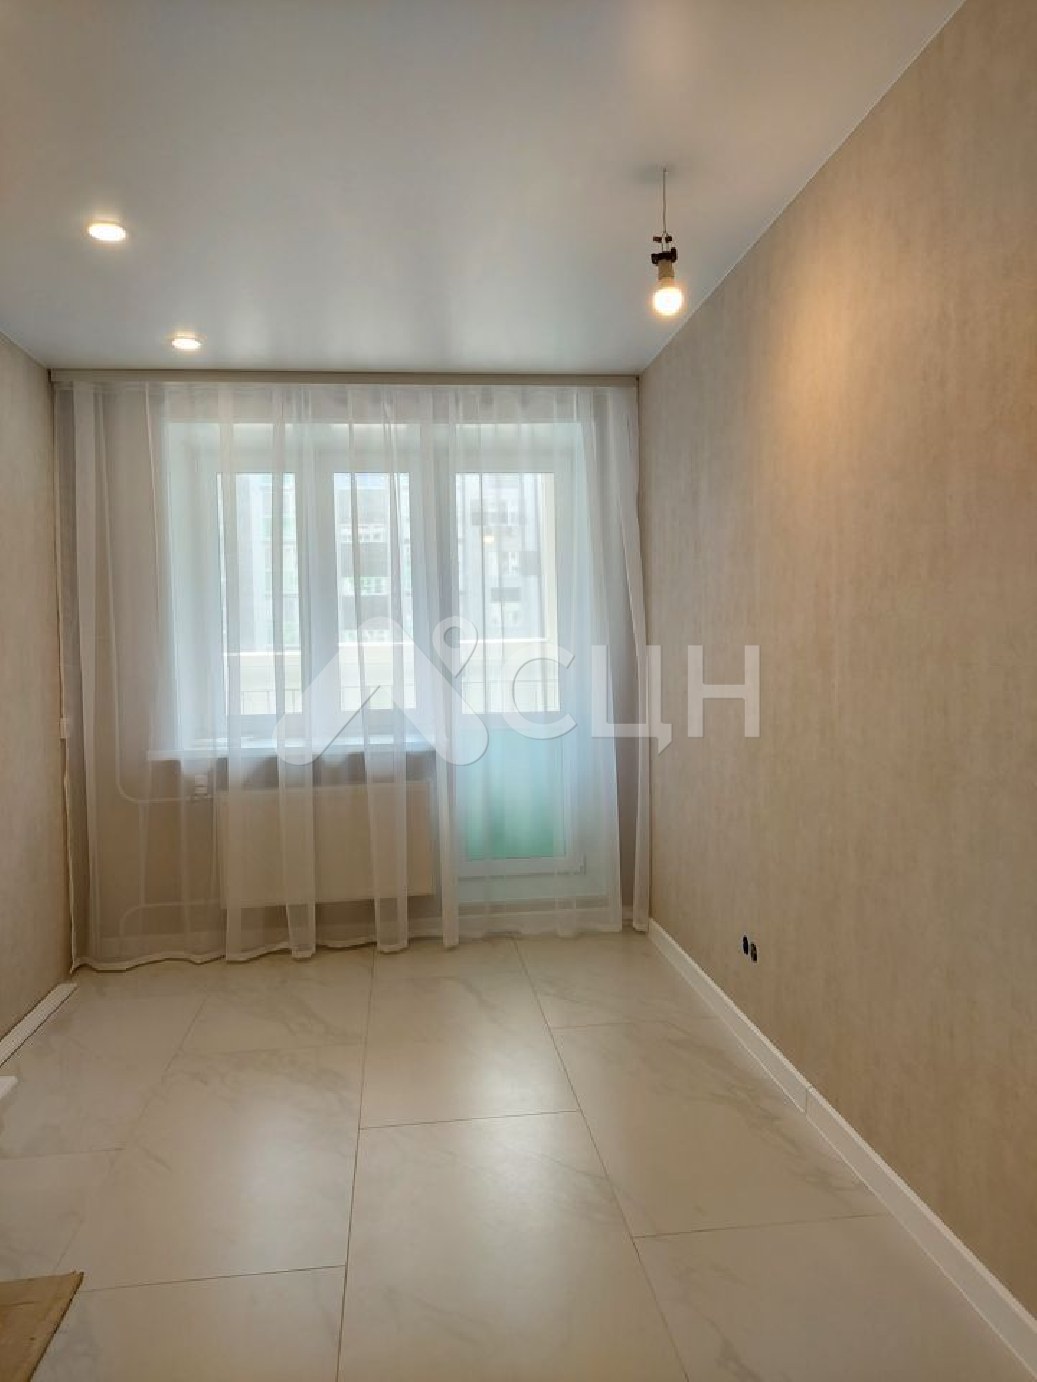 авито саров квартиры
: Г. Саров, улица Чкалова, 55, 1-комн квартира, этаж 1 из 5, продажа.